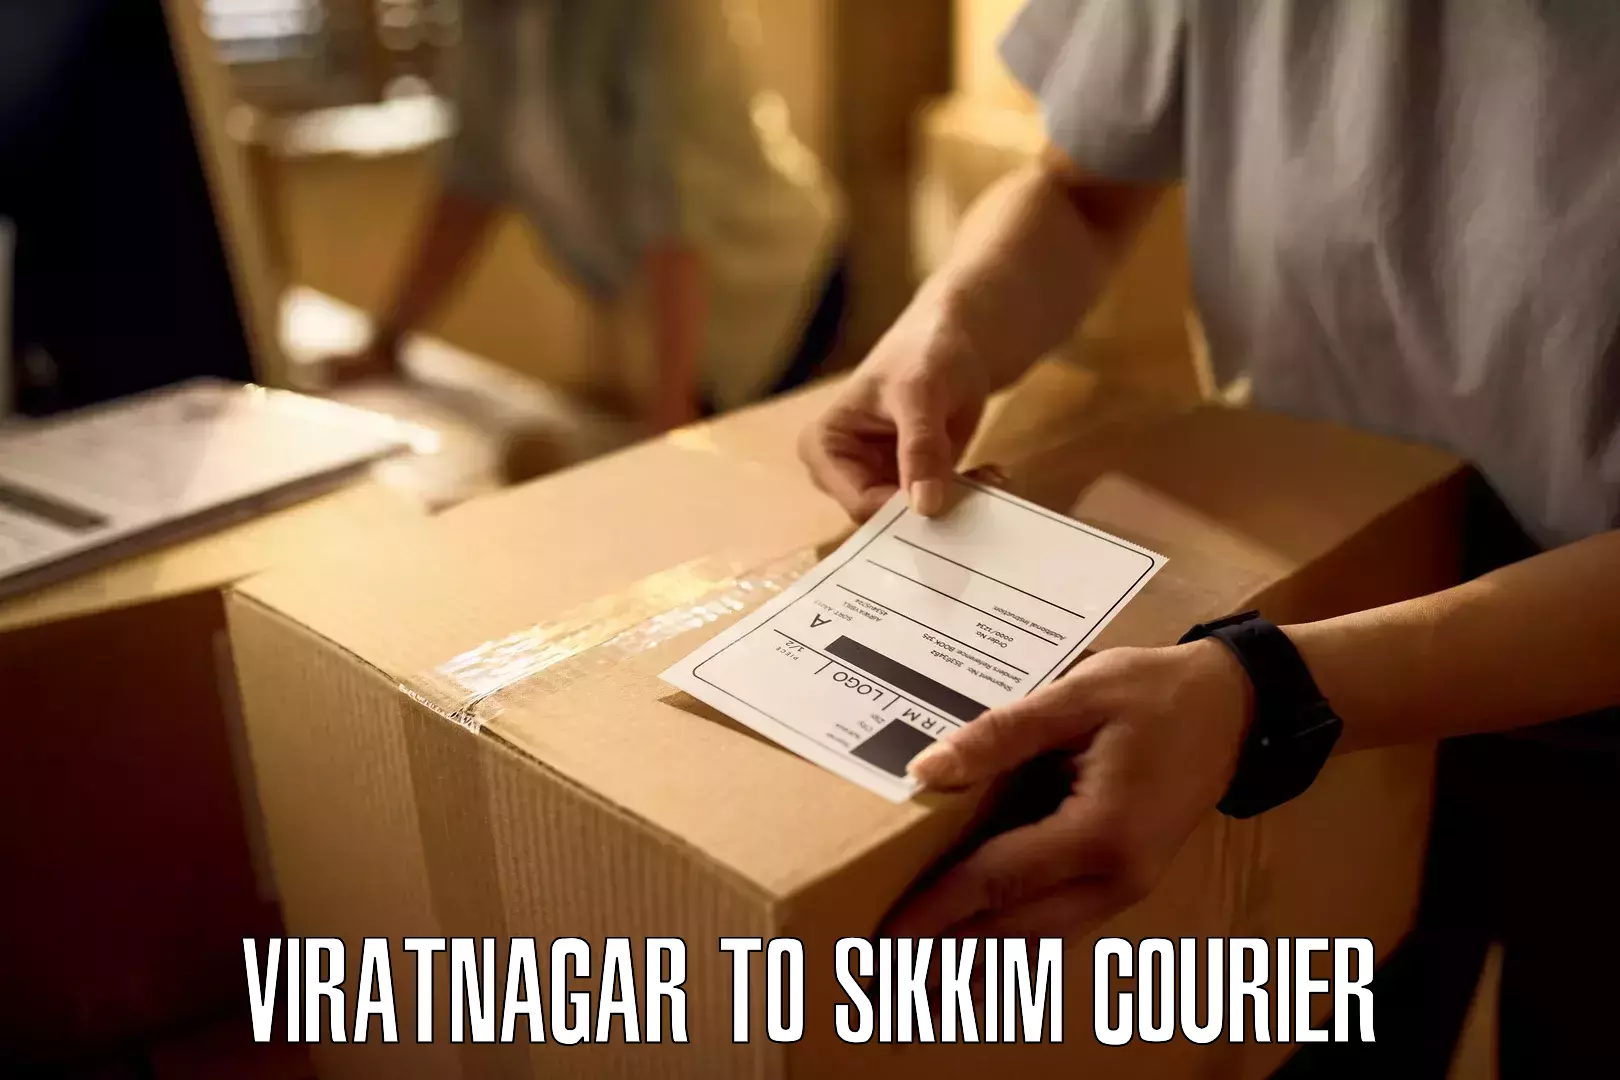 High-priority parcel service in Viratnagar to West Sikkim